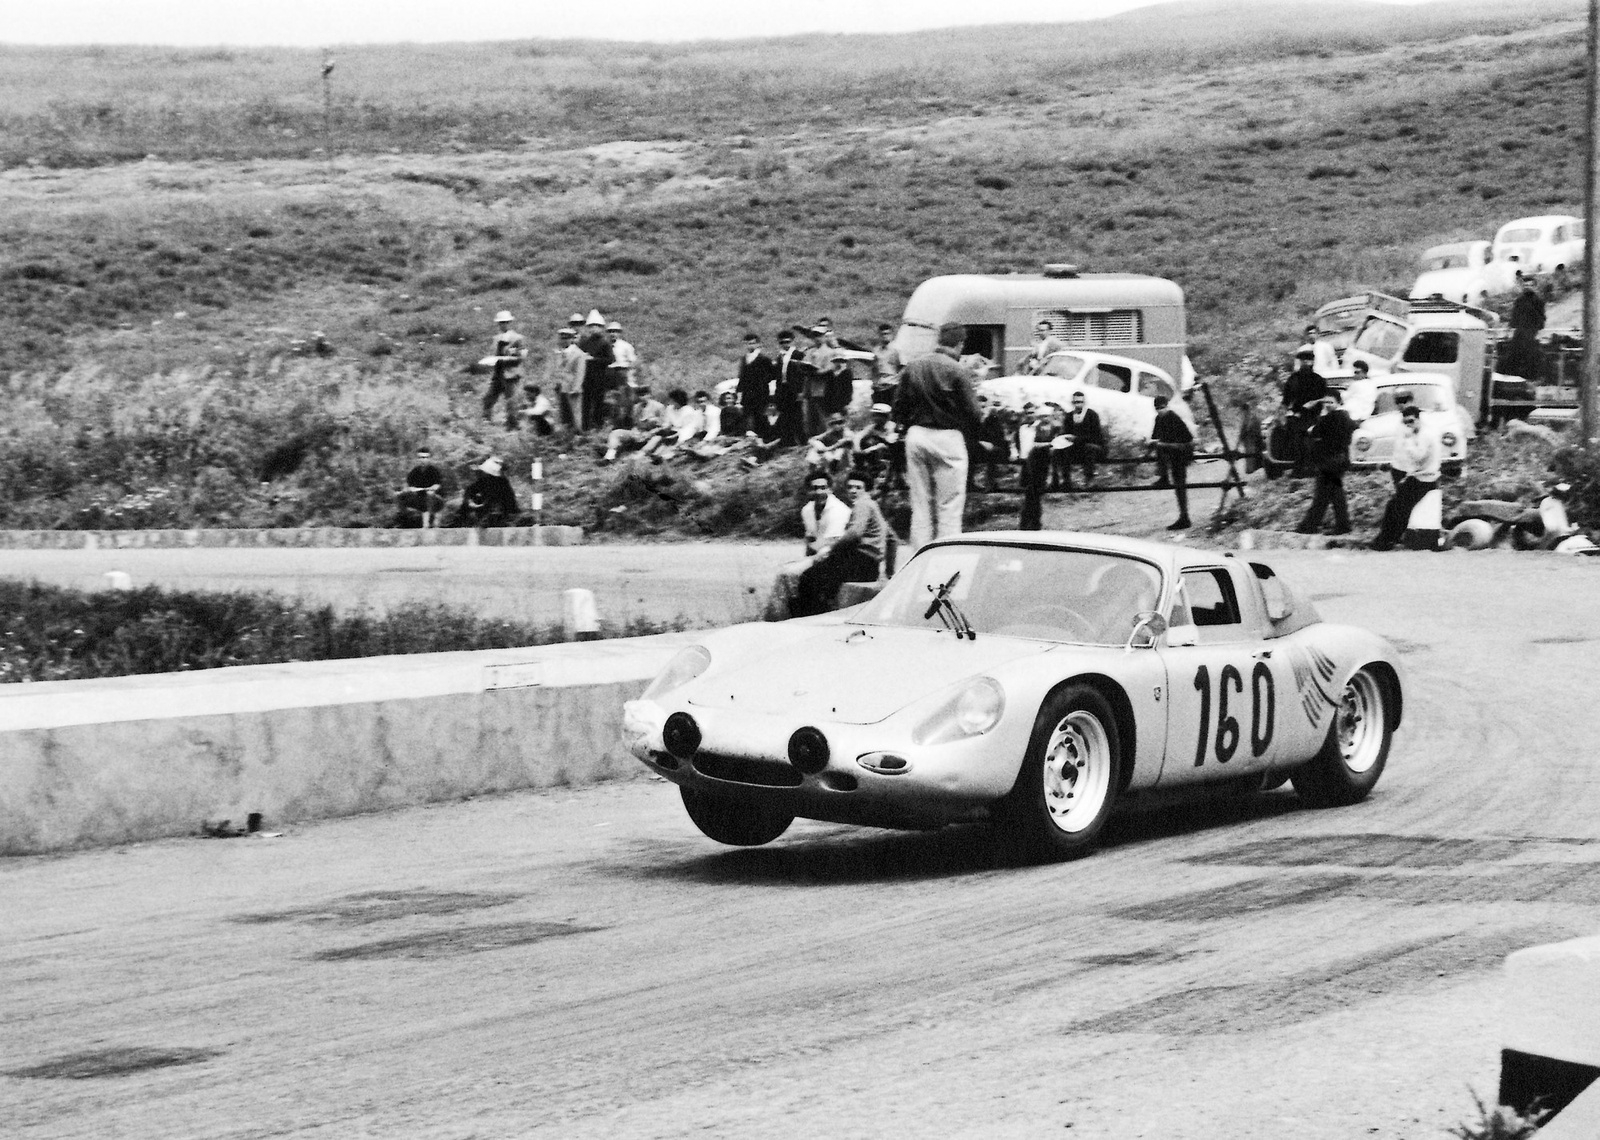 Porsche har under alla år varit aktiva i många motorsportgrenar. Här ses den svenske racerföraren Joakim Bonnier på väg mot seger i 1963 års Targa Florio på Sicilien i en Porsche 718.
Foto: Porsche